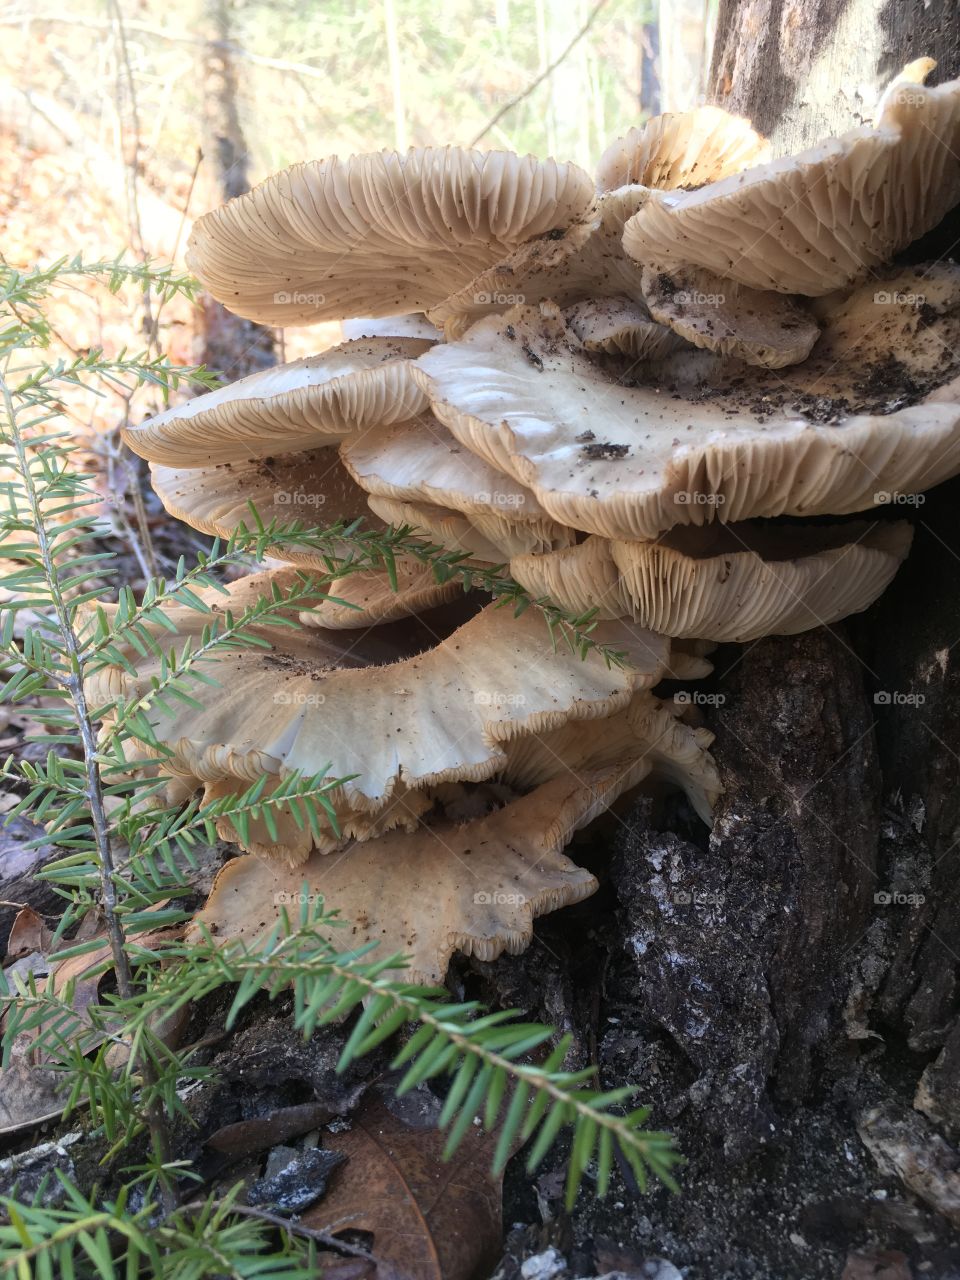 Hemlock and mushroom